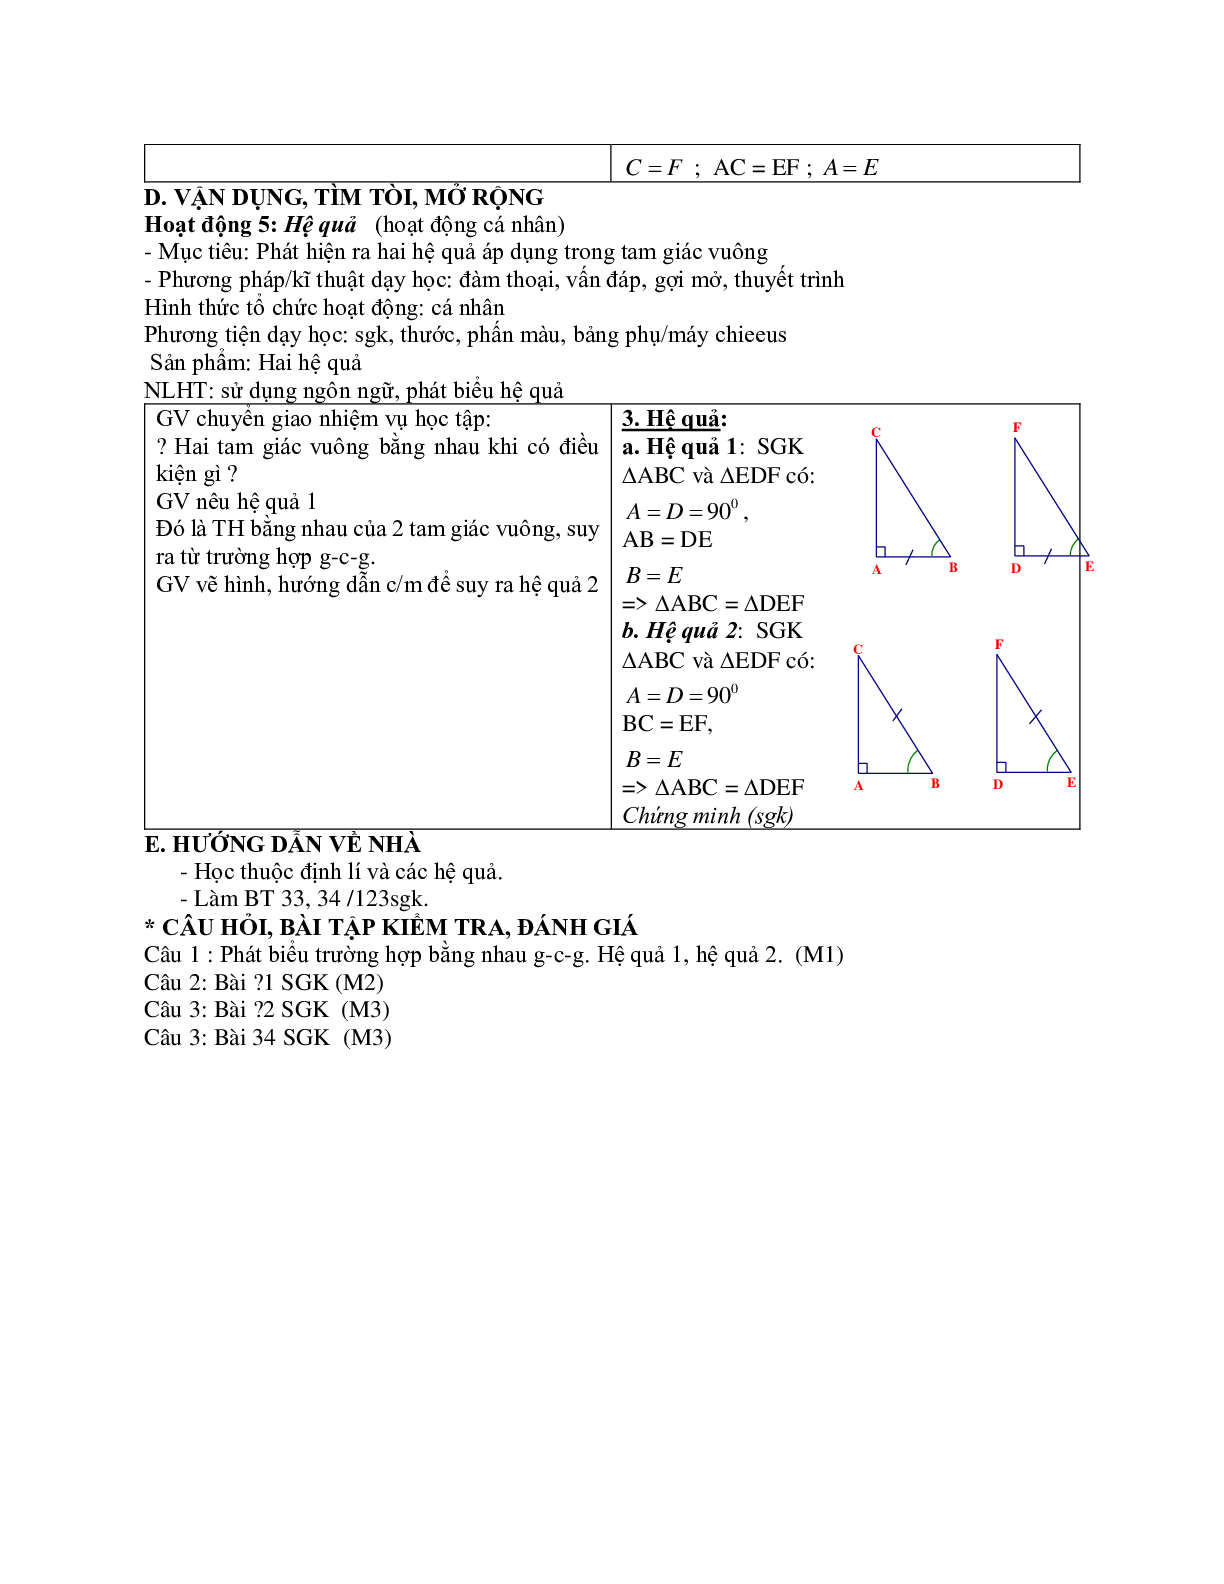 Giáo án Toán học 7 bài 5: Trường hợp bằng nhau thứ ba của tam giác góc - cạnh - góc mới nhất (trang 3)